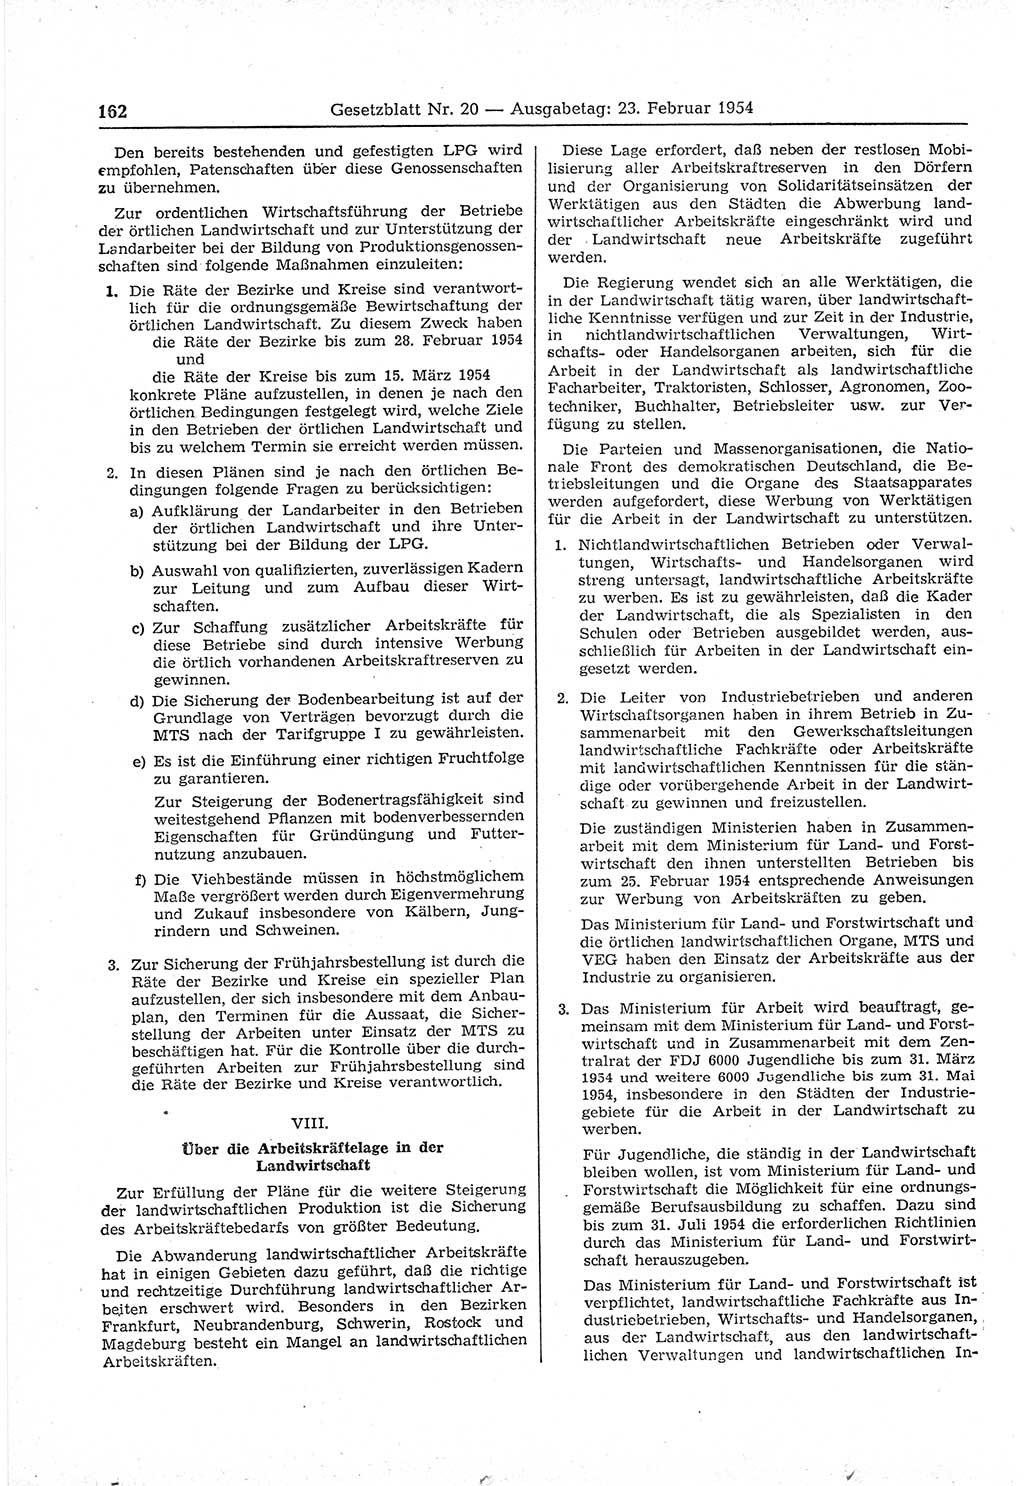 Gesetzblatt (GBl.) der Deutschen Demokratischen Republik (DDR) 1954, Seite 162 (GBl. DDR 1954, S. 162)